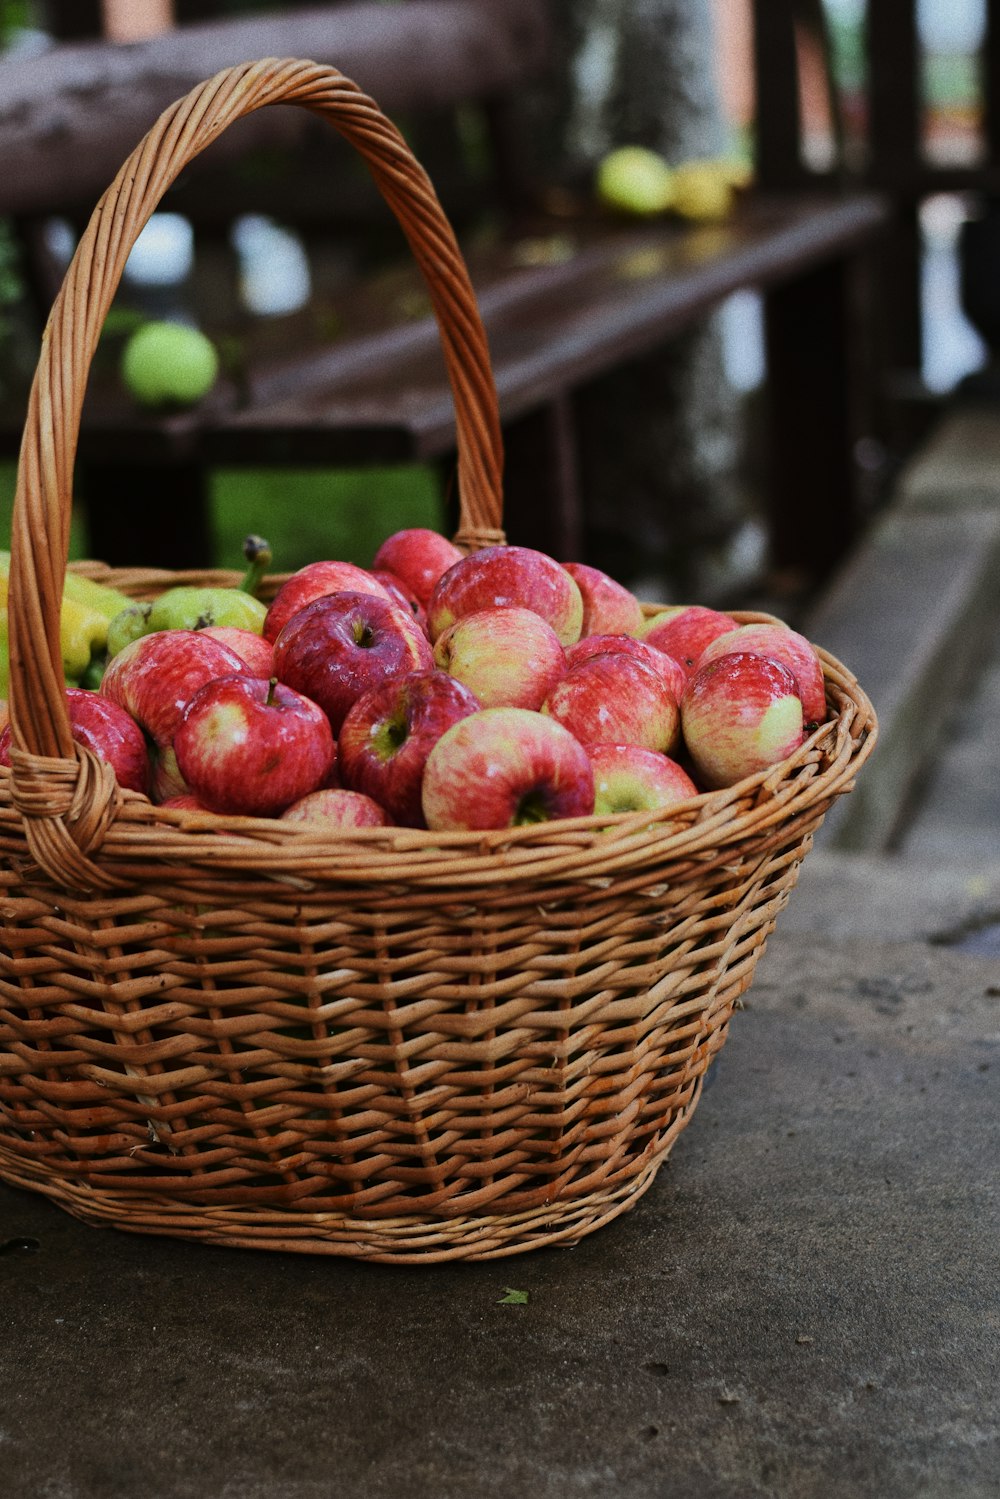 red apple fruits on basket